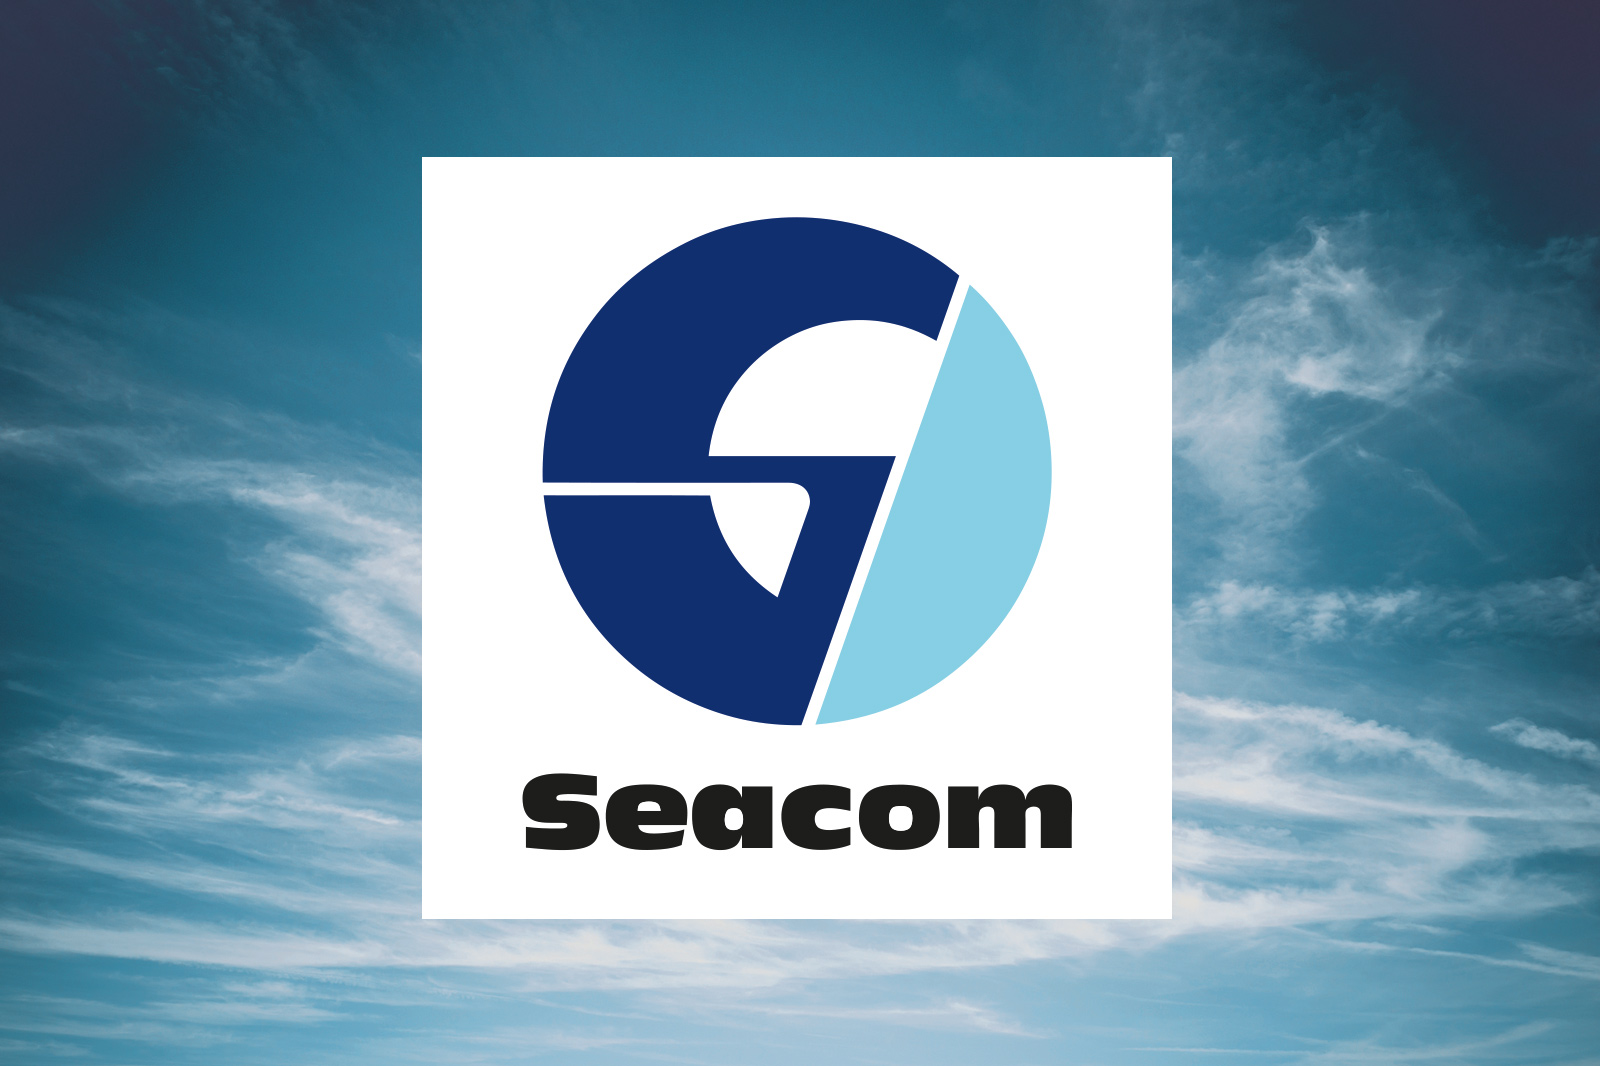 Mit Seacom hat sich ein weiterer Hidden Champion für Karius & Partner entschieden.